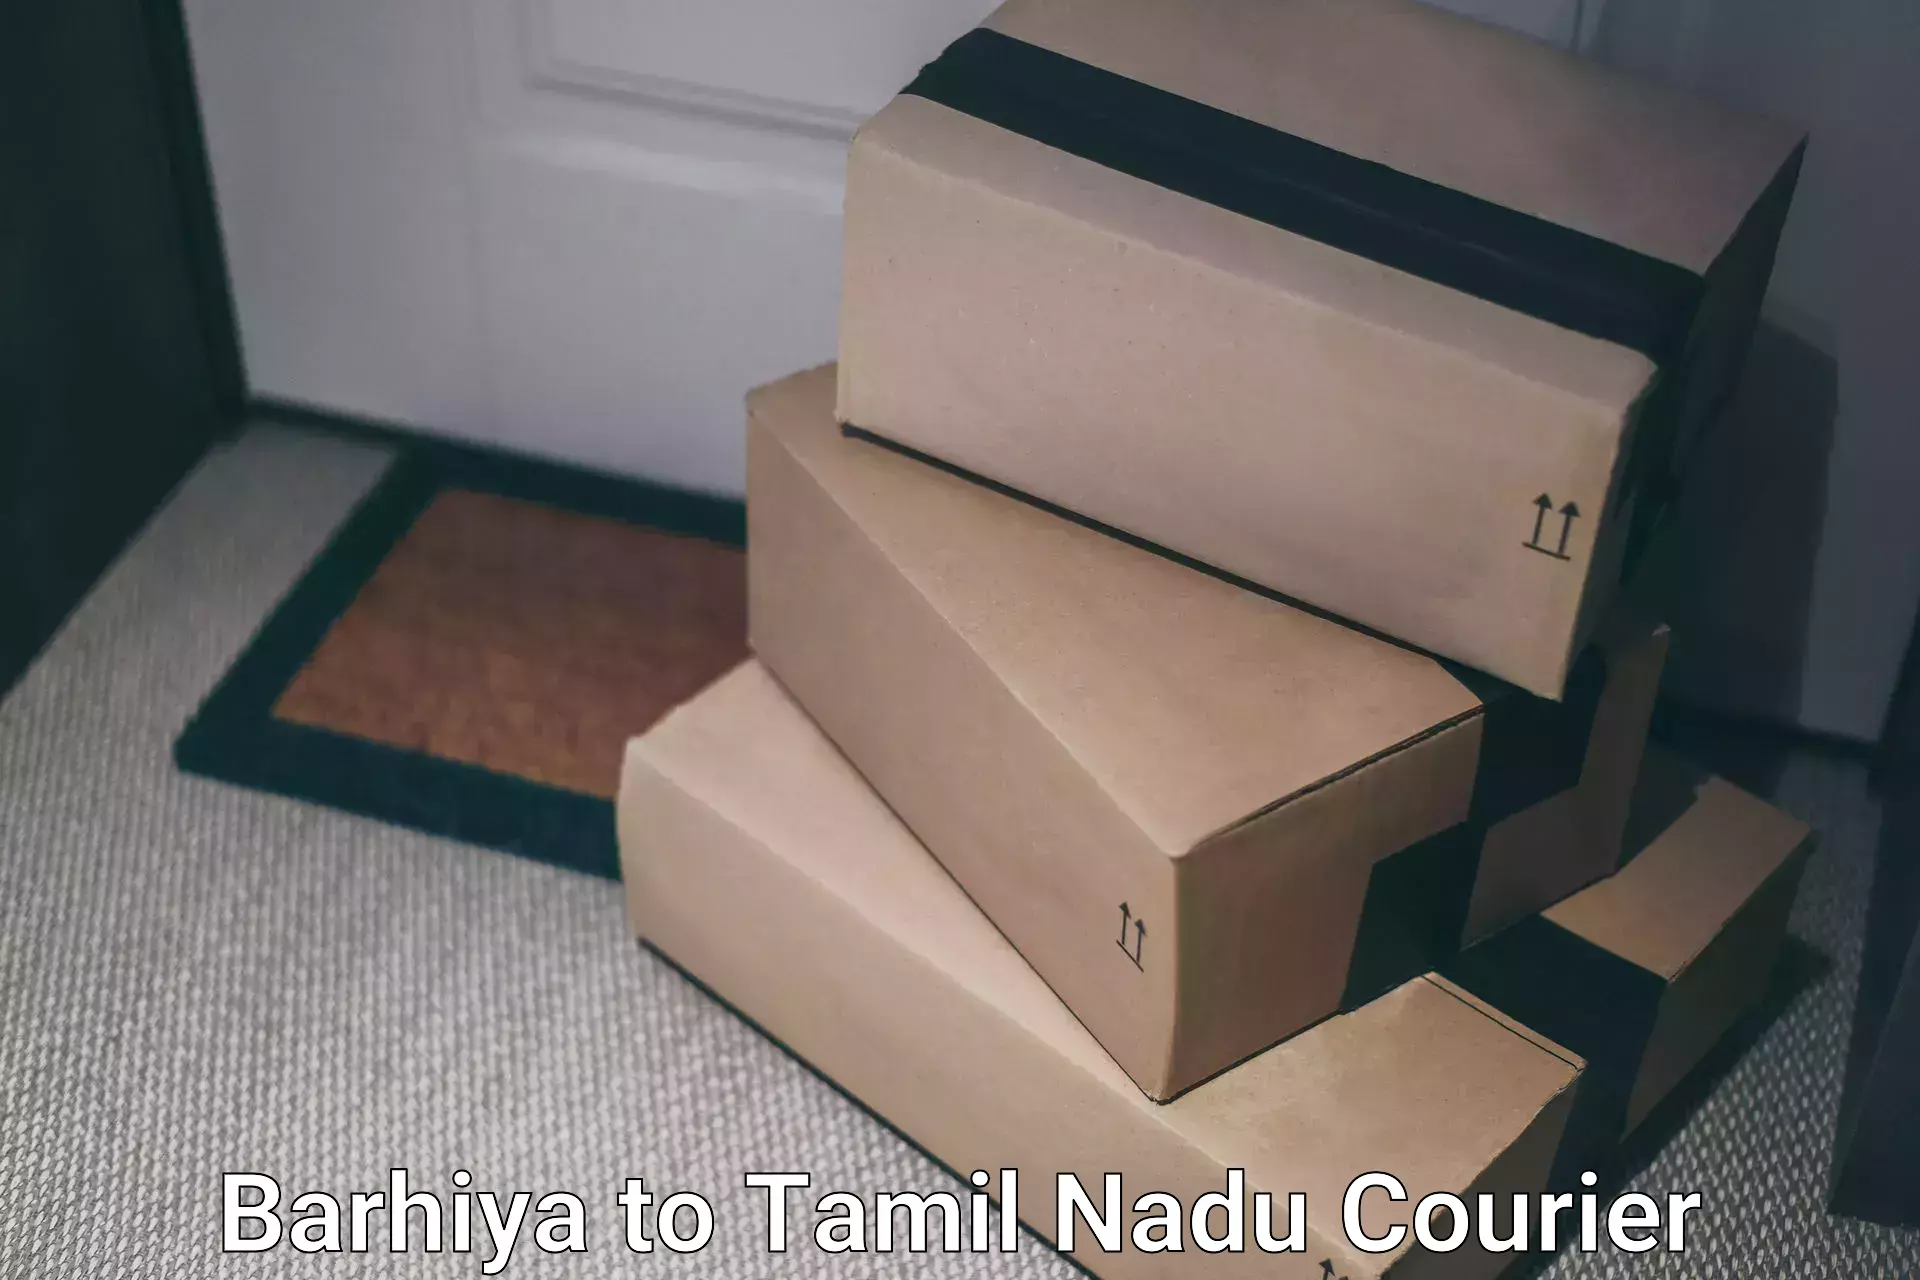 Cargo courier service Barhiya to Madurai